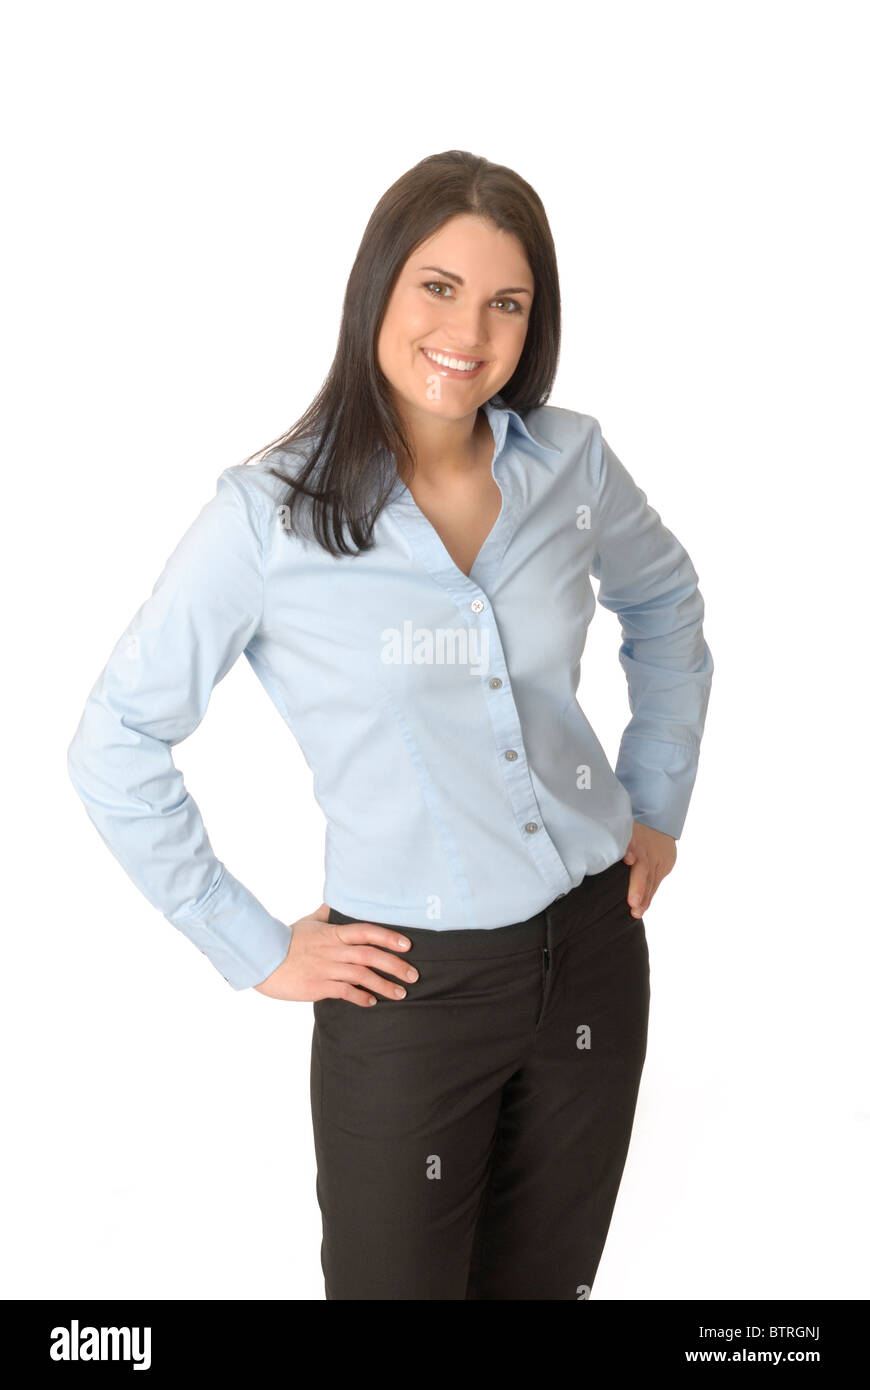 Attraktive, lächelnde Frau tragen blaue Bluse und schwarze Hosen  Stockfotografie - Alamy